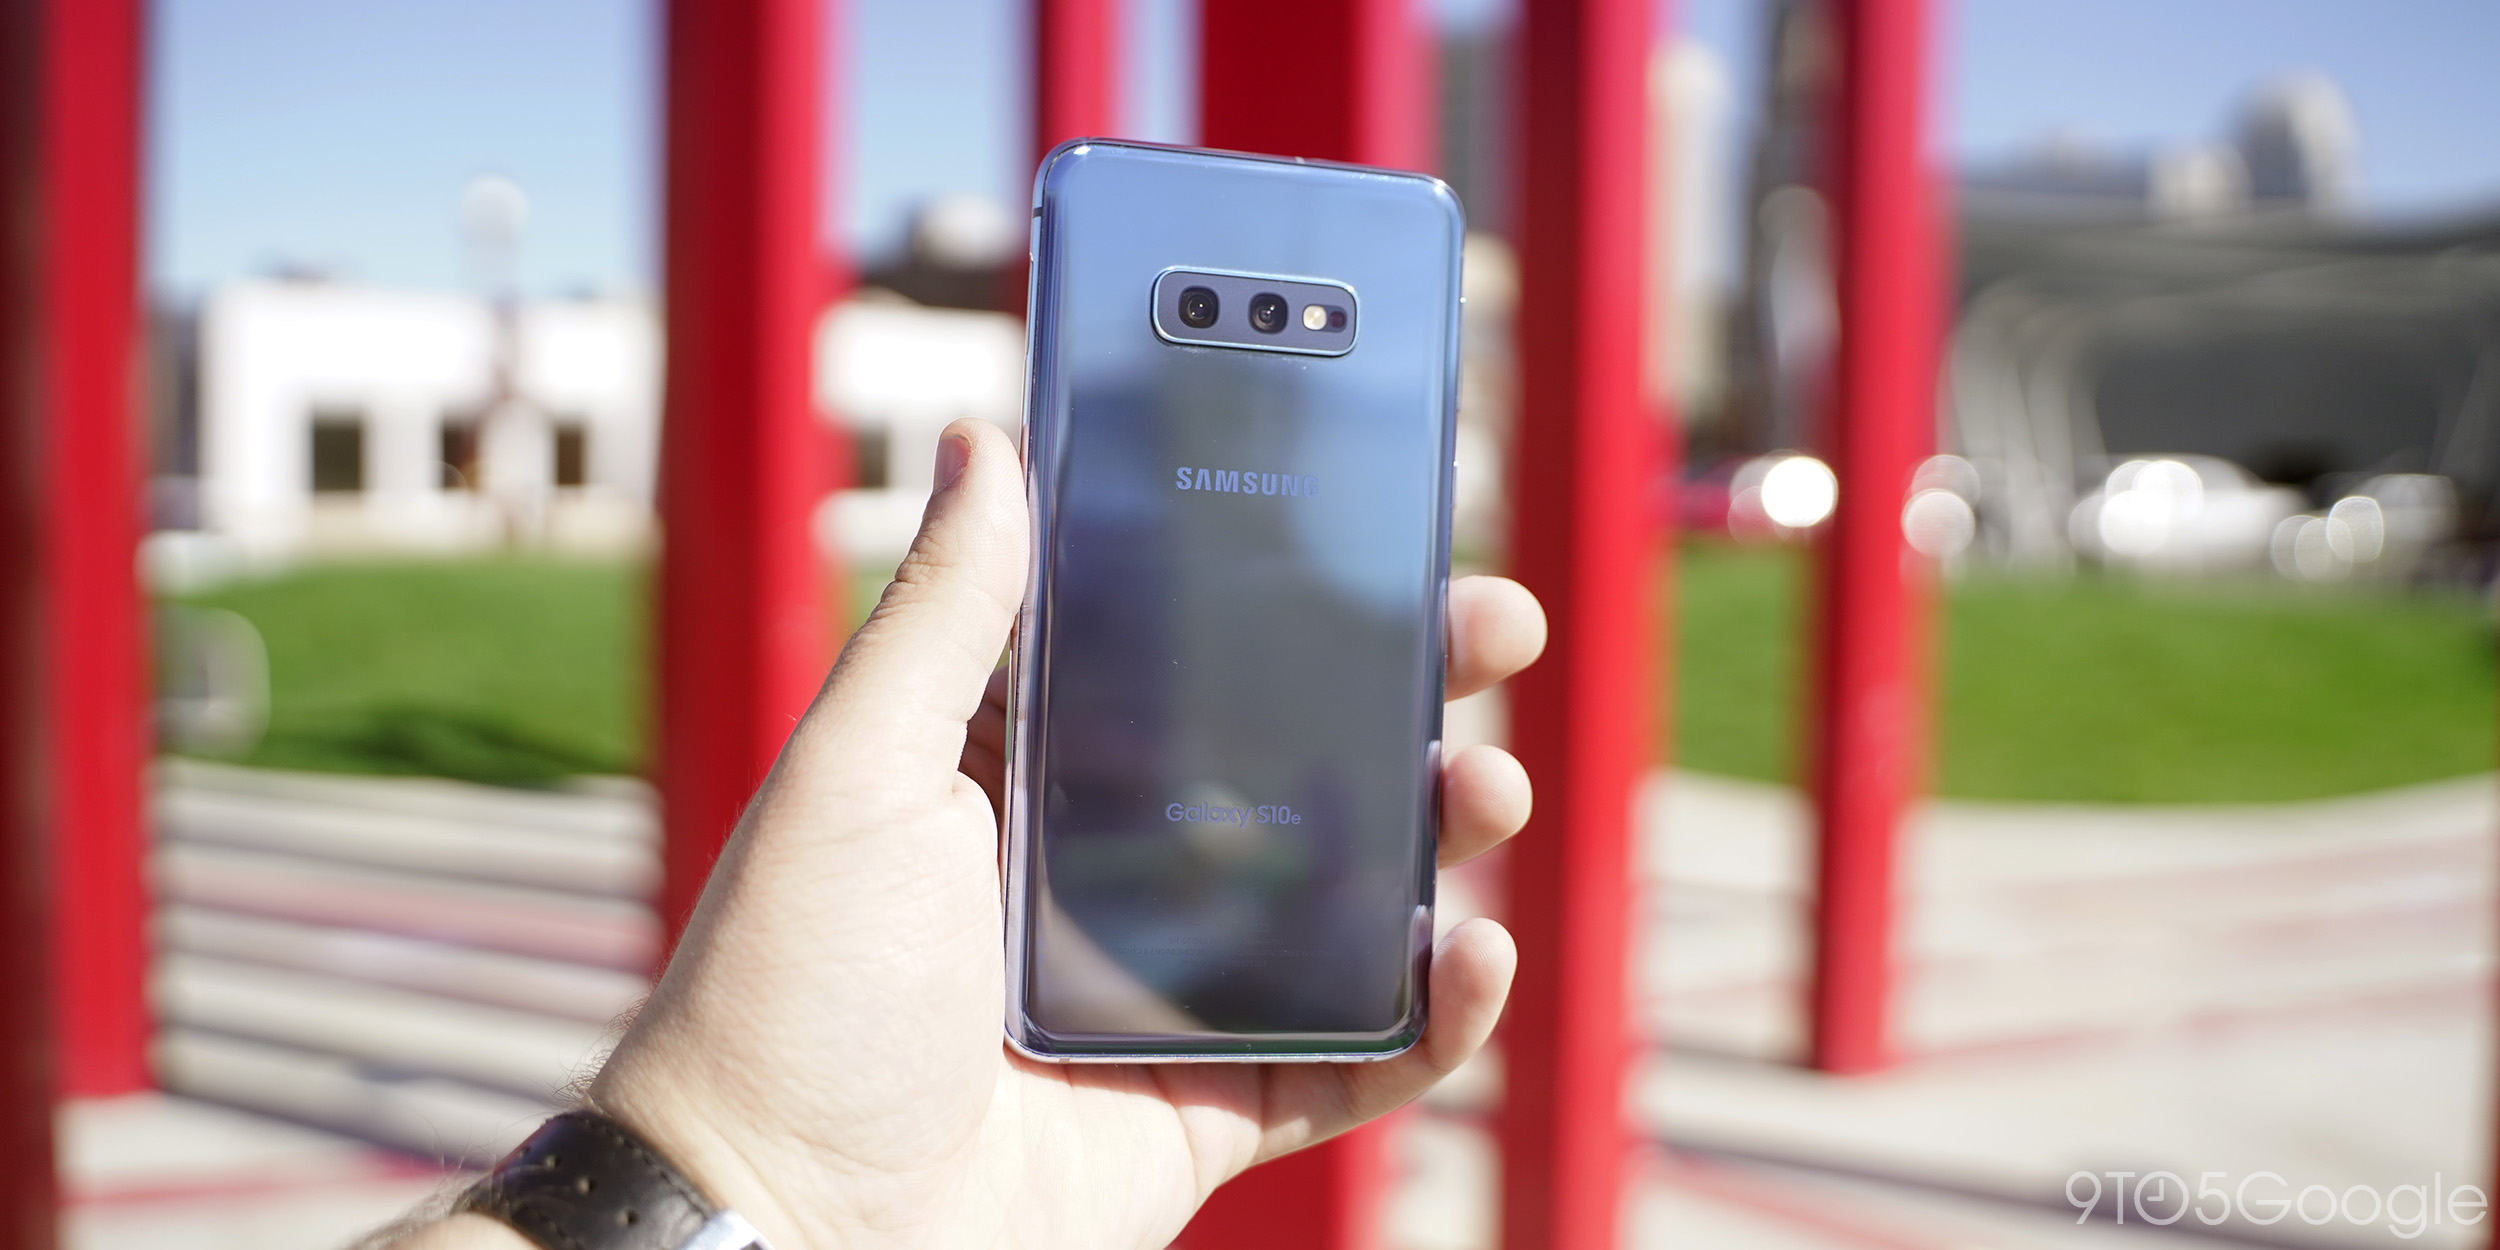 Samsung Galaxy S10e Review: Smaller, Cheaper, But Still Impressive